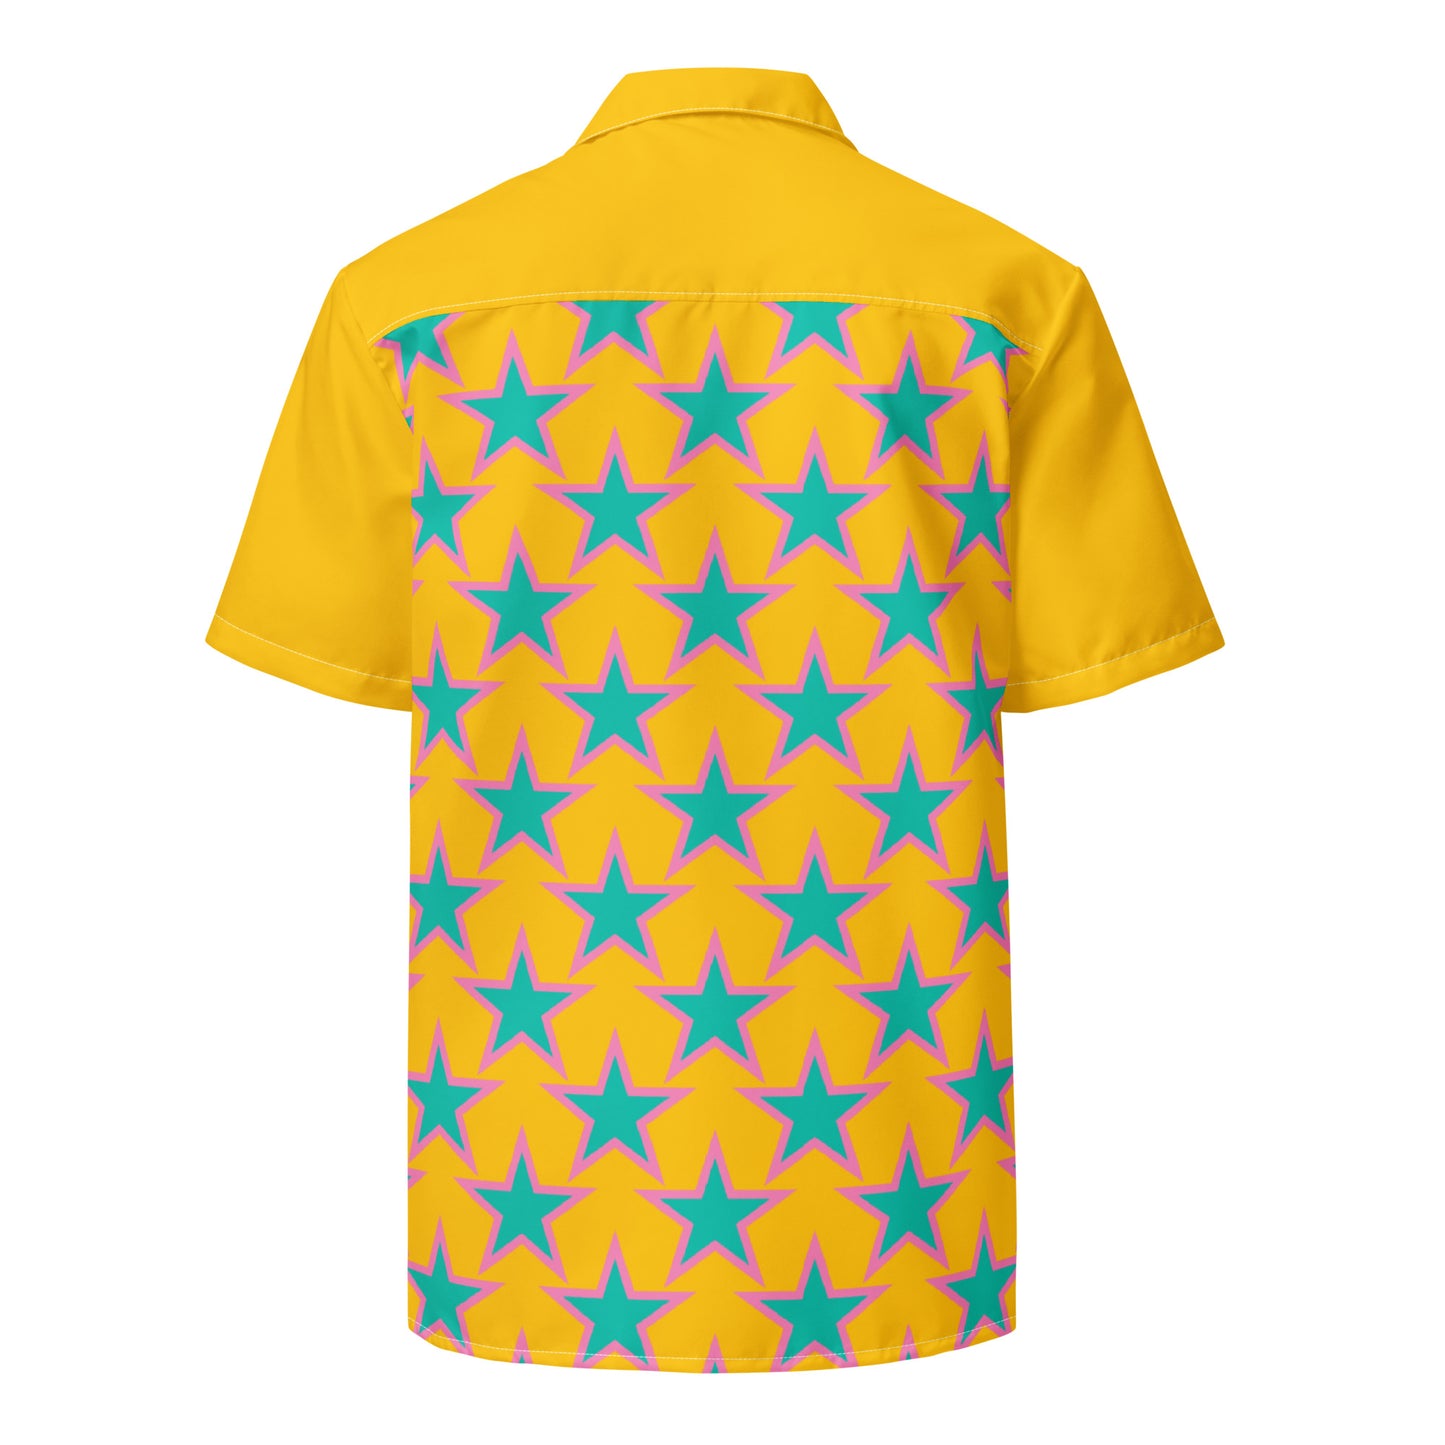 ELLIE STAR yellow - Unisex button shirt